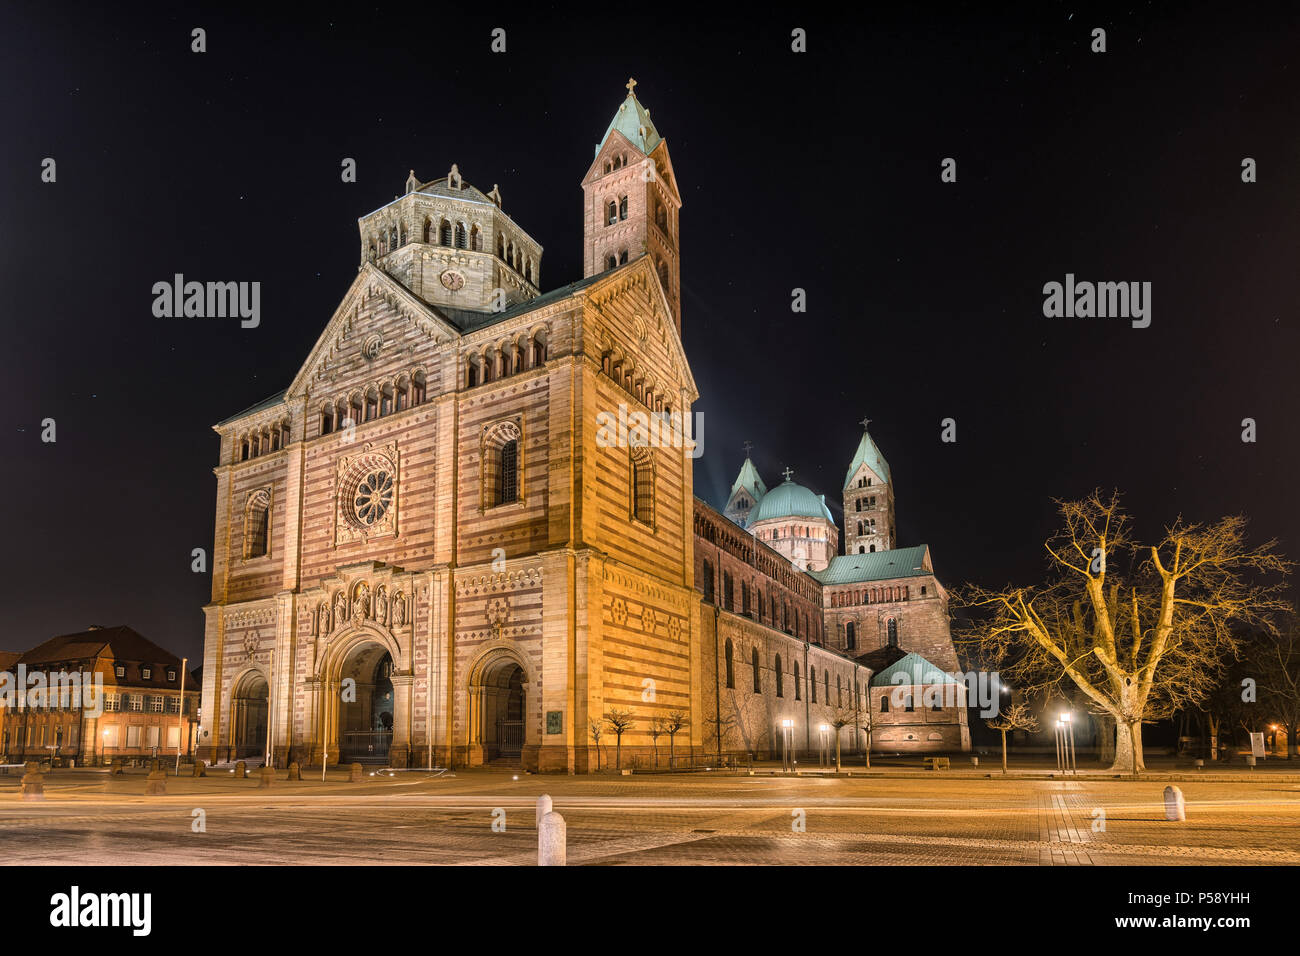 Cathédrale Speyer, Allemagne la nuit. Officiellement appelée Basilique cathédrale impériale de l'Assomption et St Stephen, court en allemand 'Dom zu Speyer' Banque D'Images